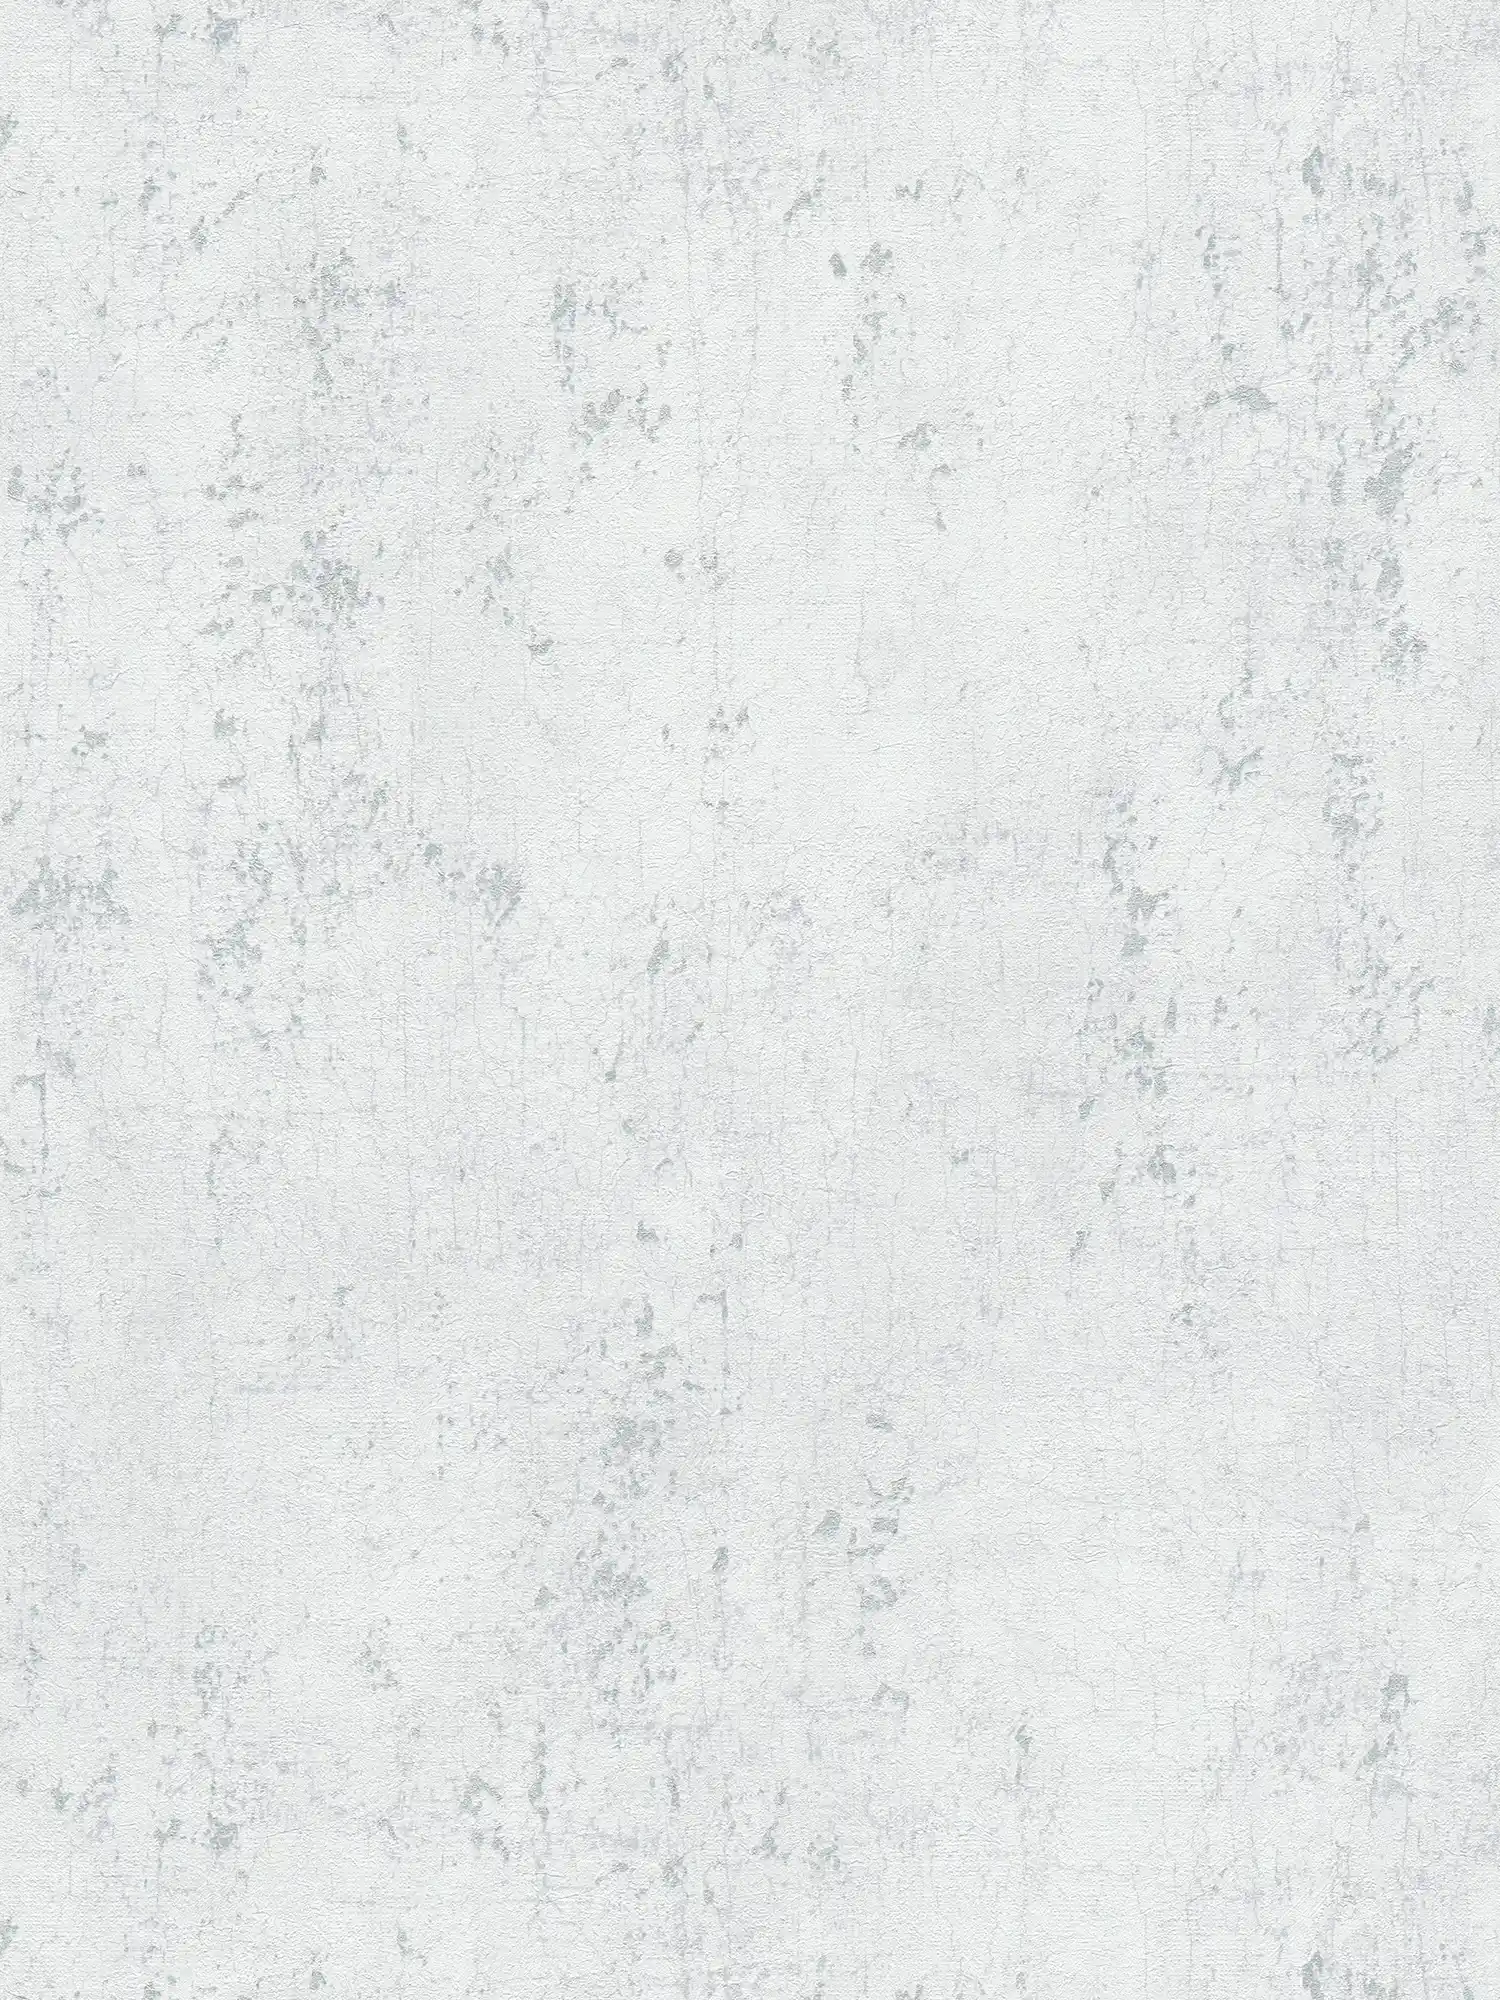 Carta da parati in gesso ottico grigio chiaro con crepe argentate - grigio, metallizzato, bianco
